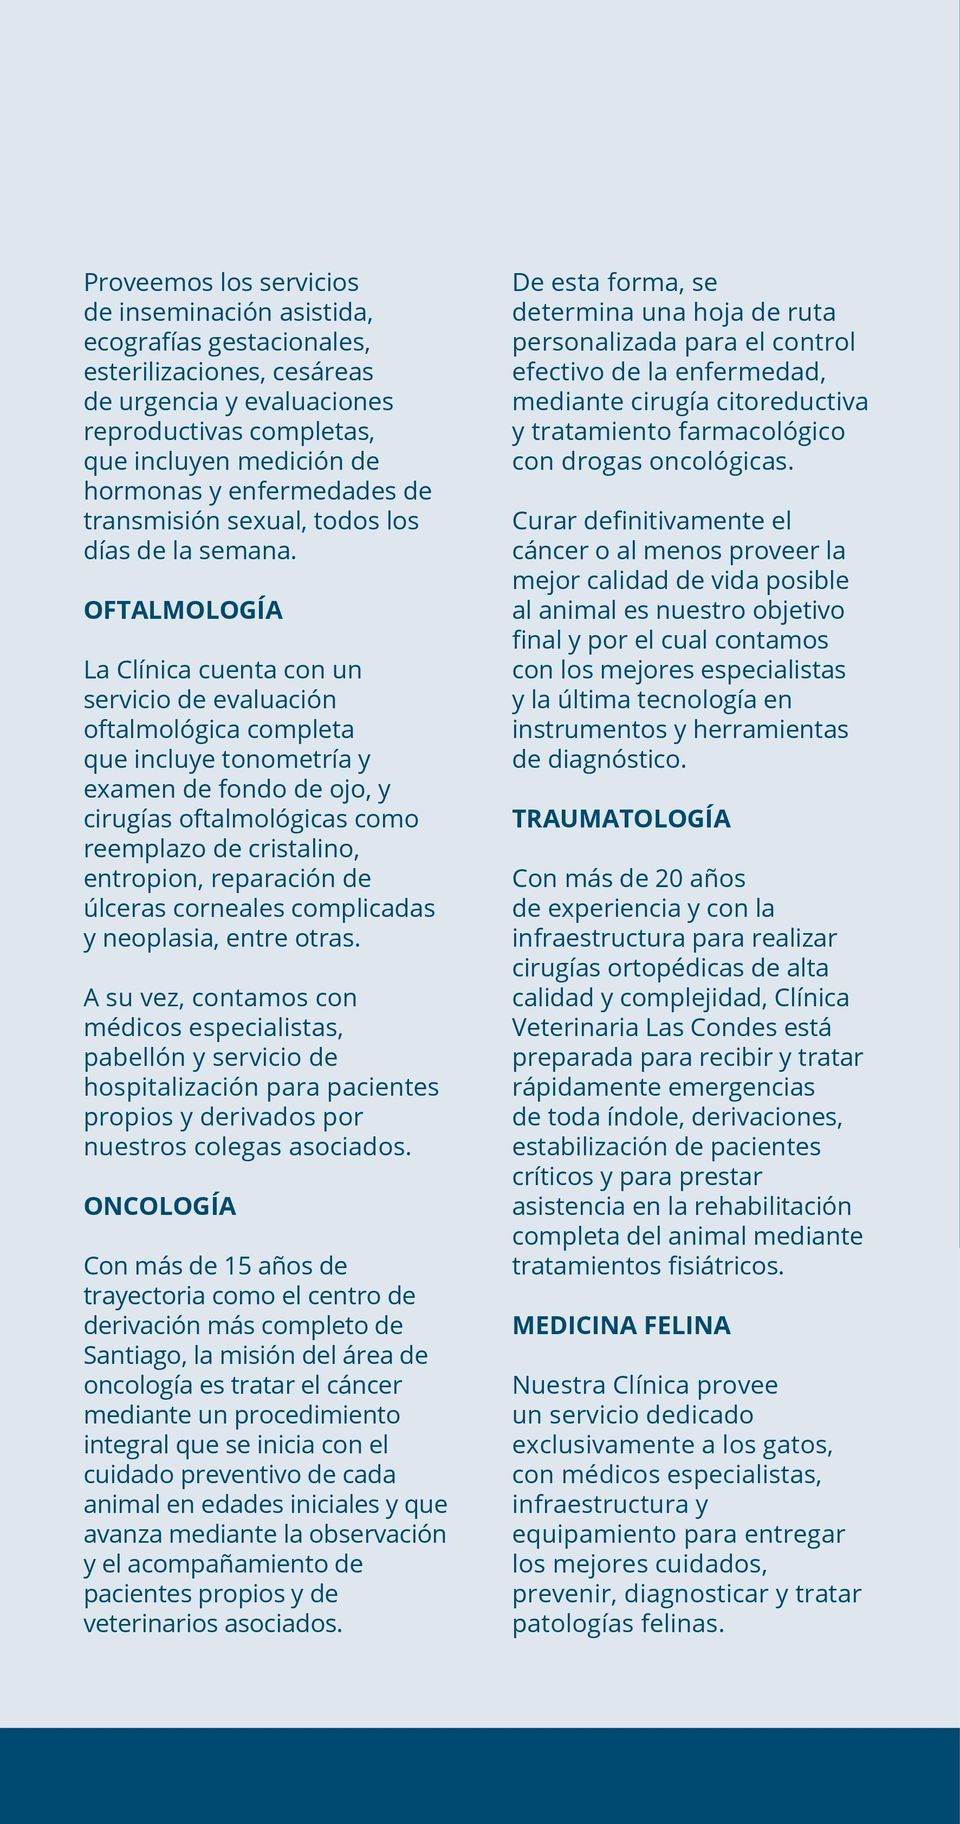 OFTALMOLOGÍA La Clínica cuenta con un servicio de evaluación oftalmológica completa que incluye tonometría y examen de fondo de ojo, y cirugías oftalmológicas como reemplazo de cristalino, entropion,